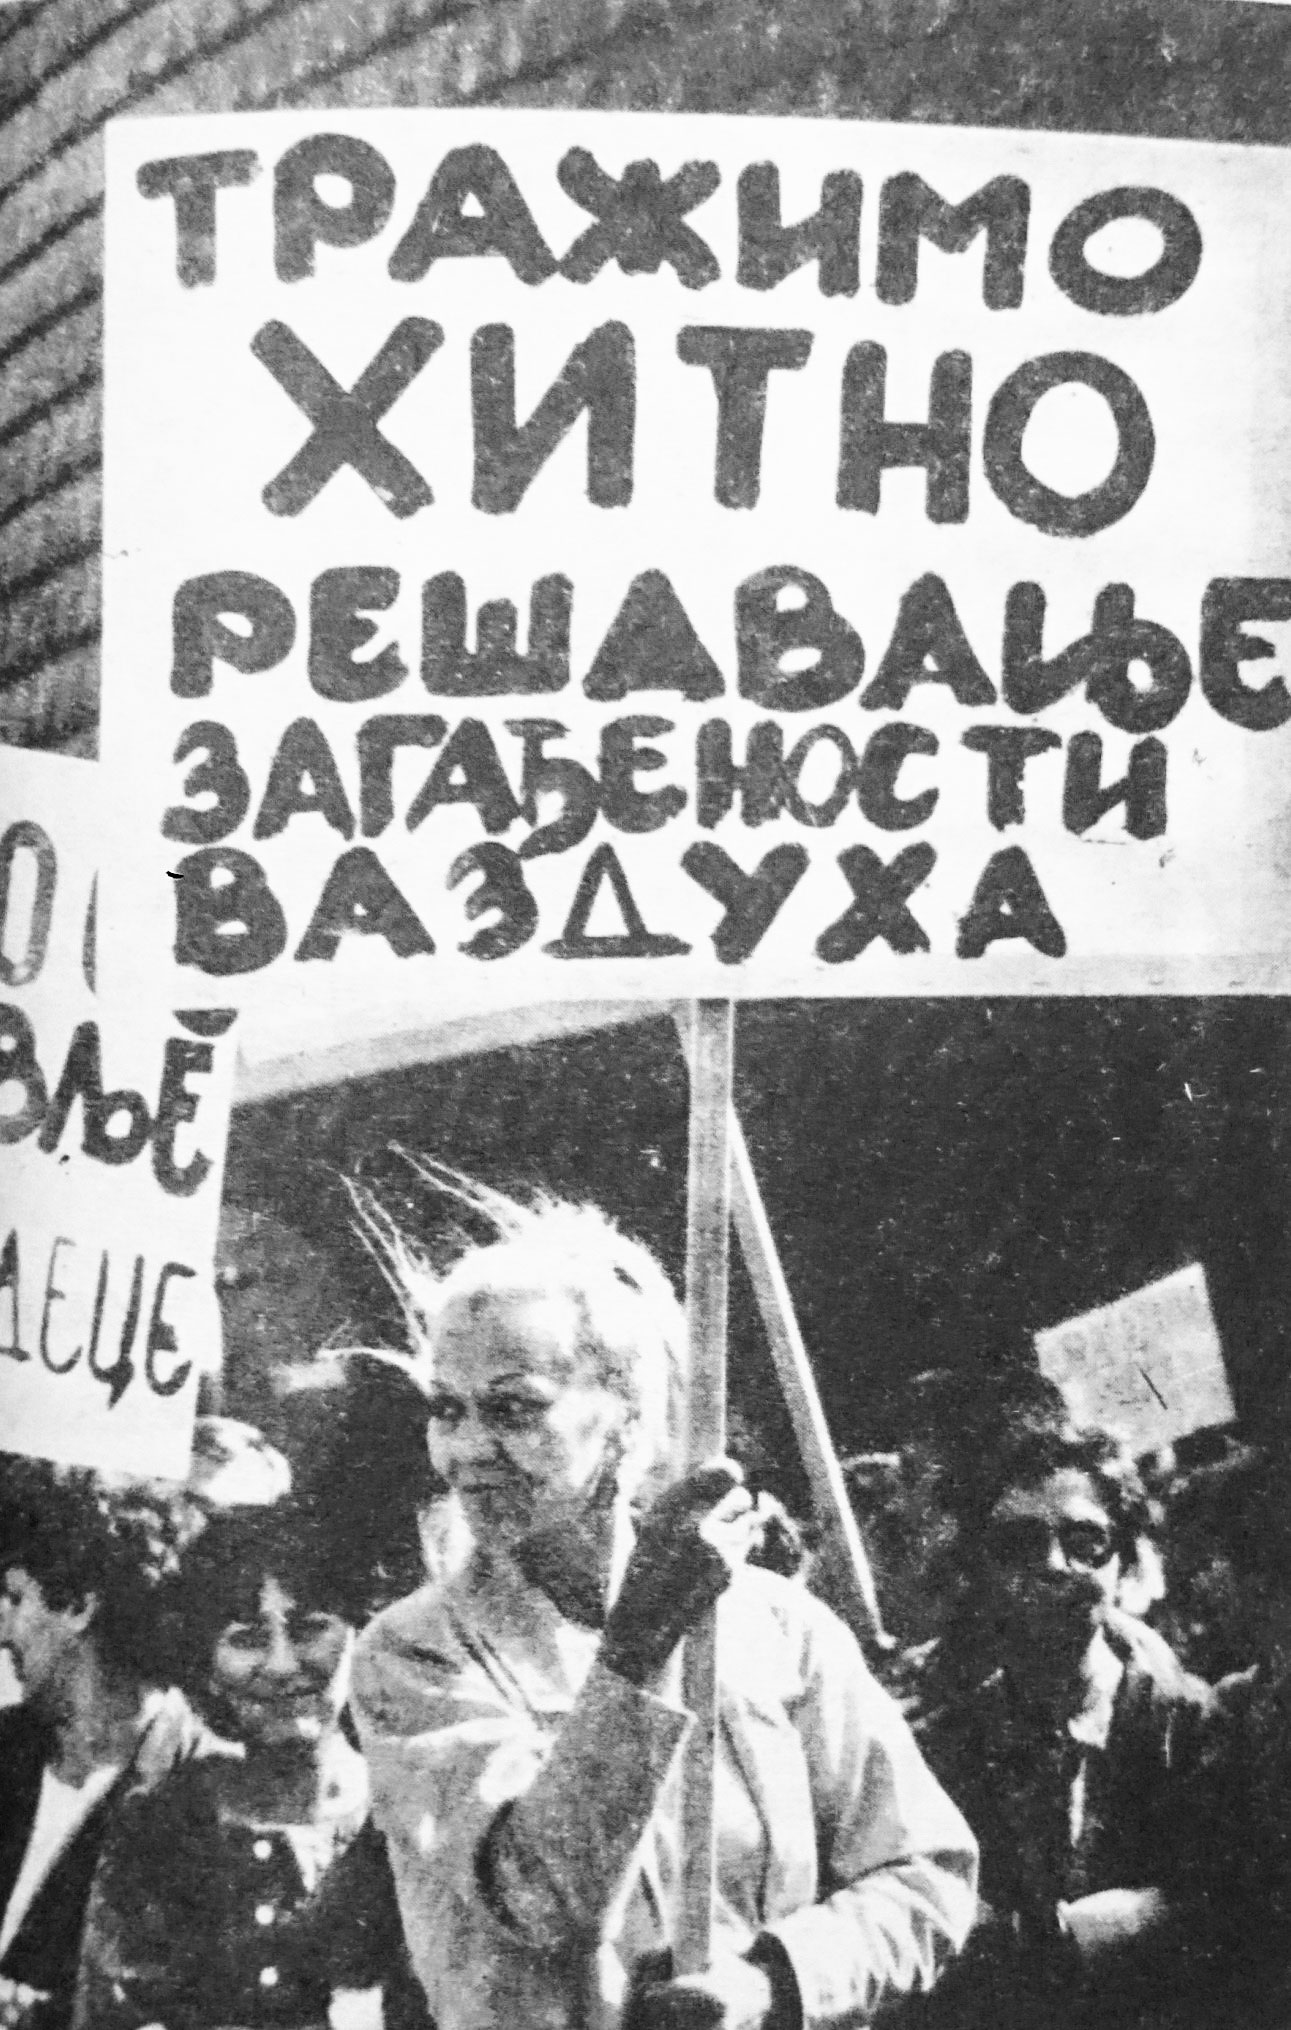 1988 ekologija protest miting Zaječar Jugoslavija